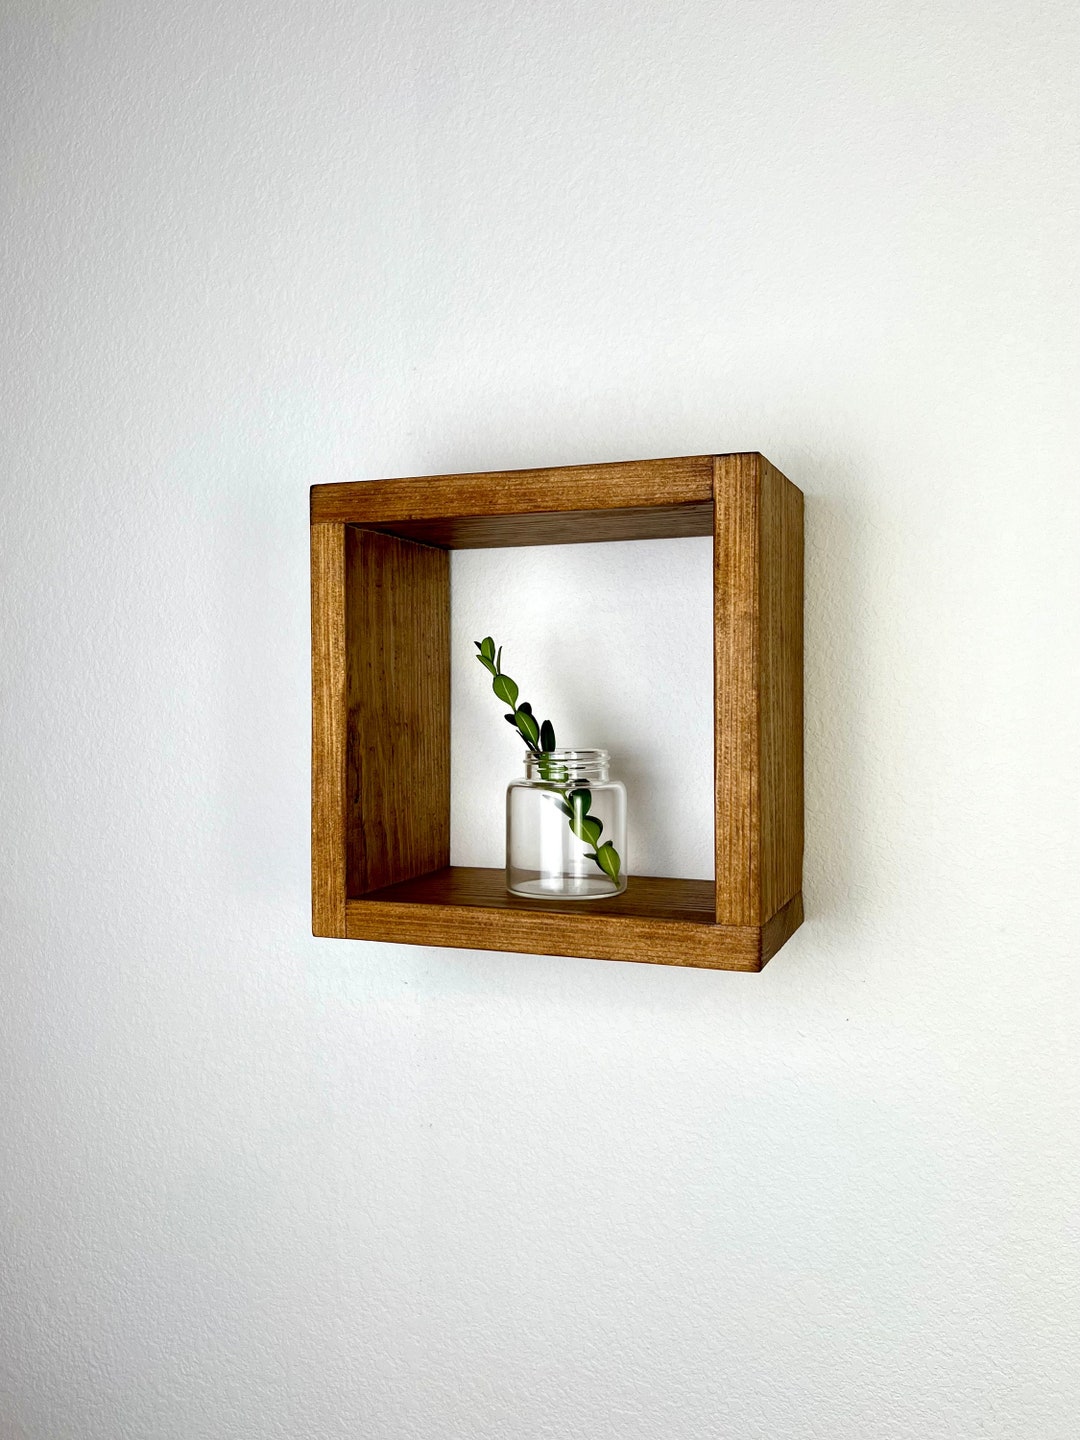 Floating Cube Shelf Medium Quality Wood Shelf Hanging Plant Display Shadow  Box Gallery Wall Bathroom Storage Minimalist 